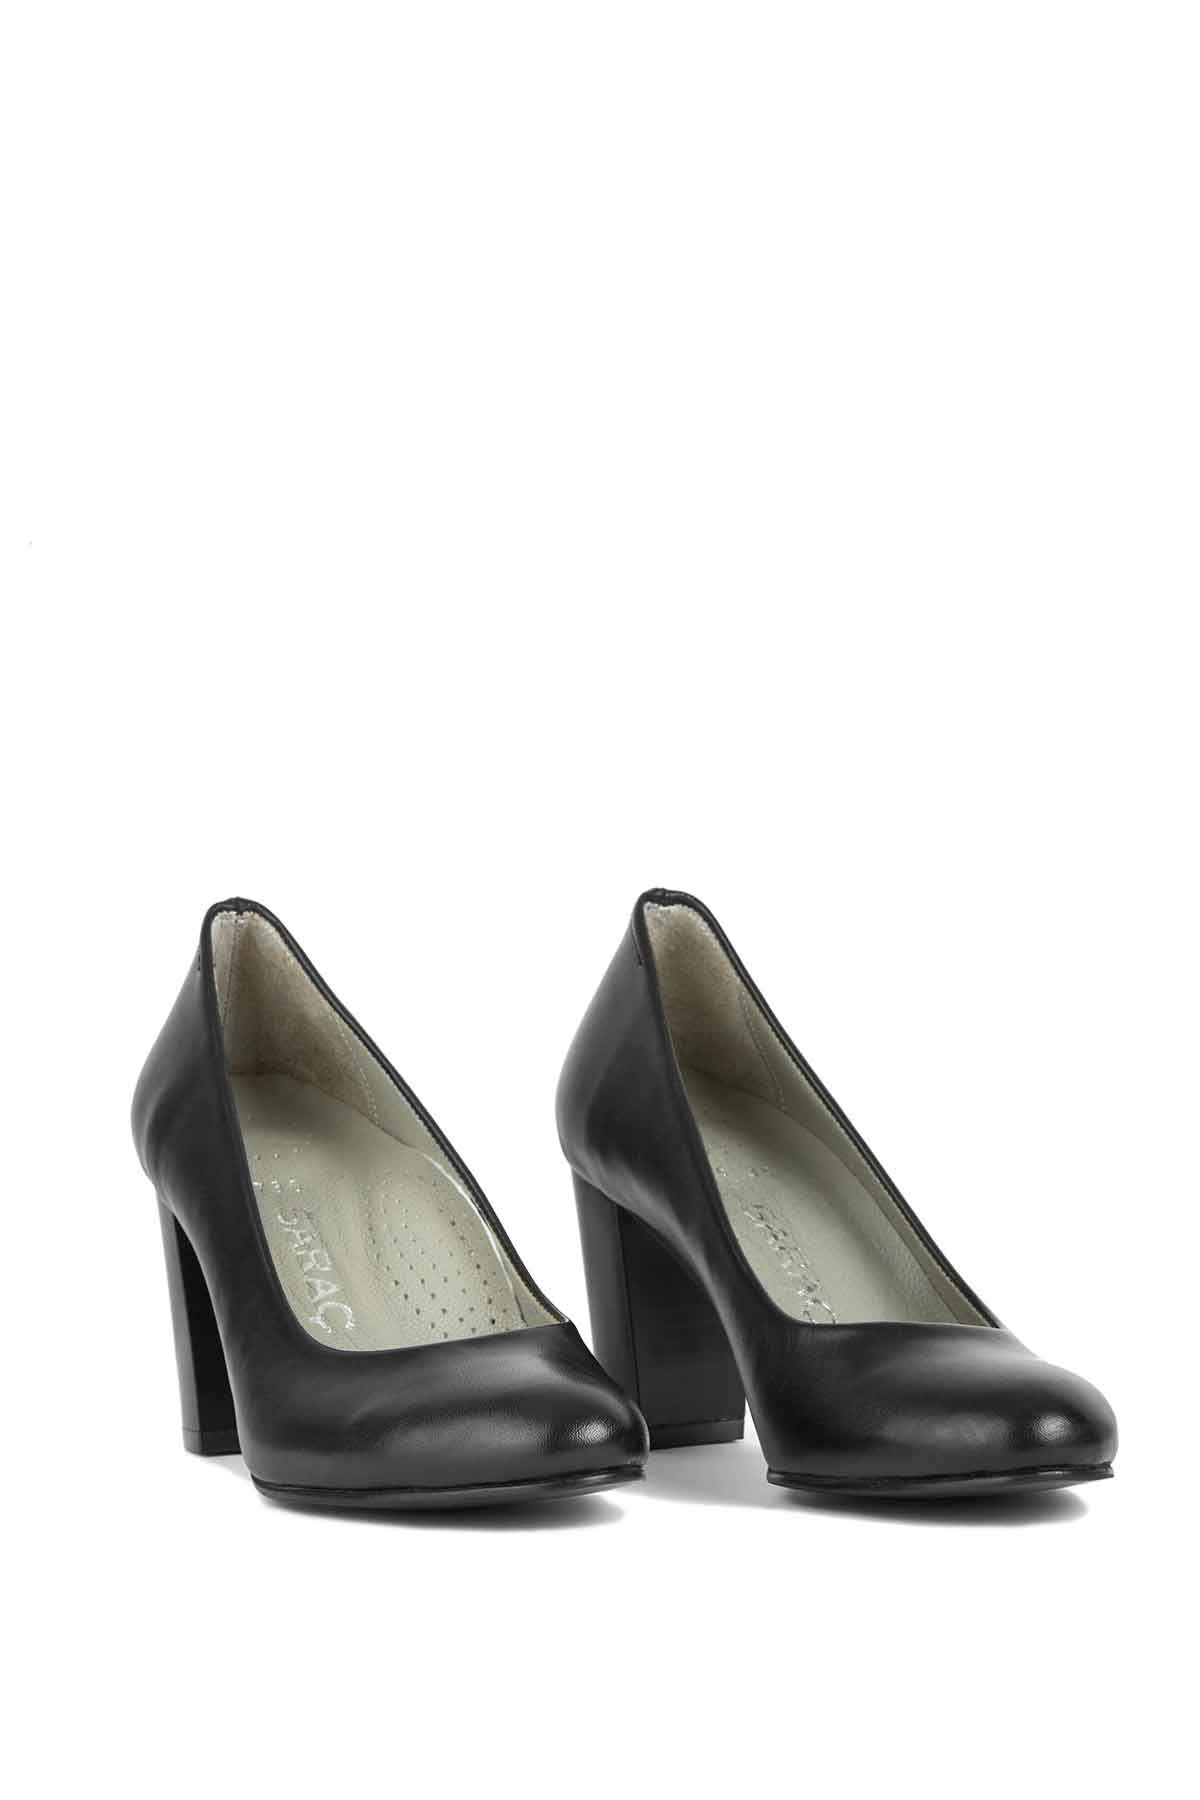 Gerçek Deri Kadın Topuklu Ayakkabı  Siyah Tabha